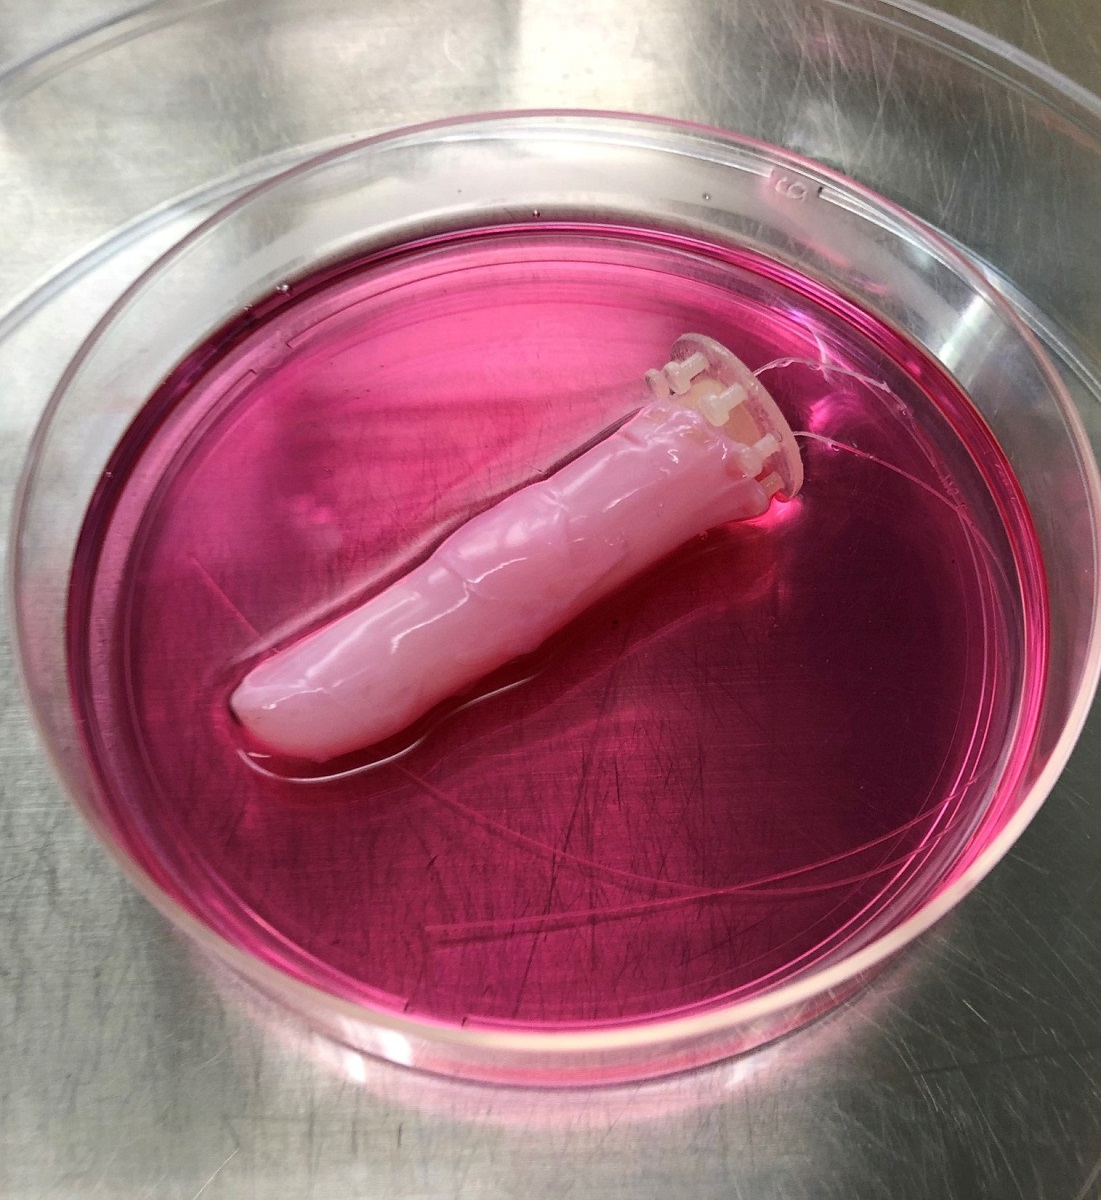 Degetul robot care are piele vie, într-un vas Petri, roz